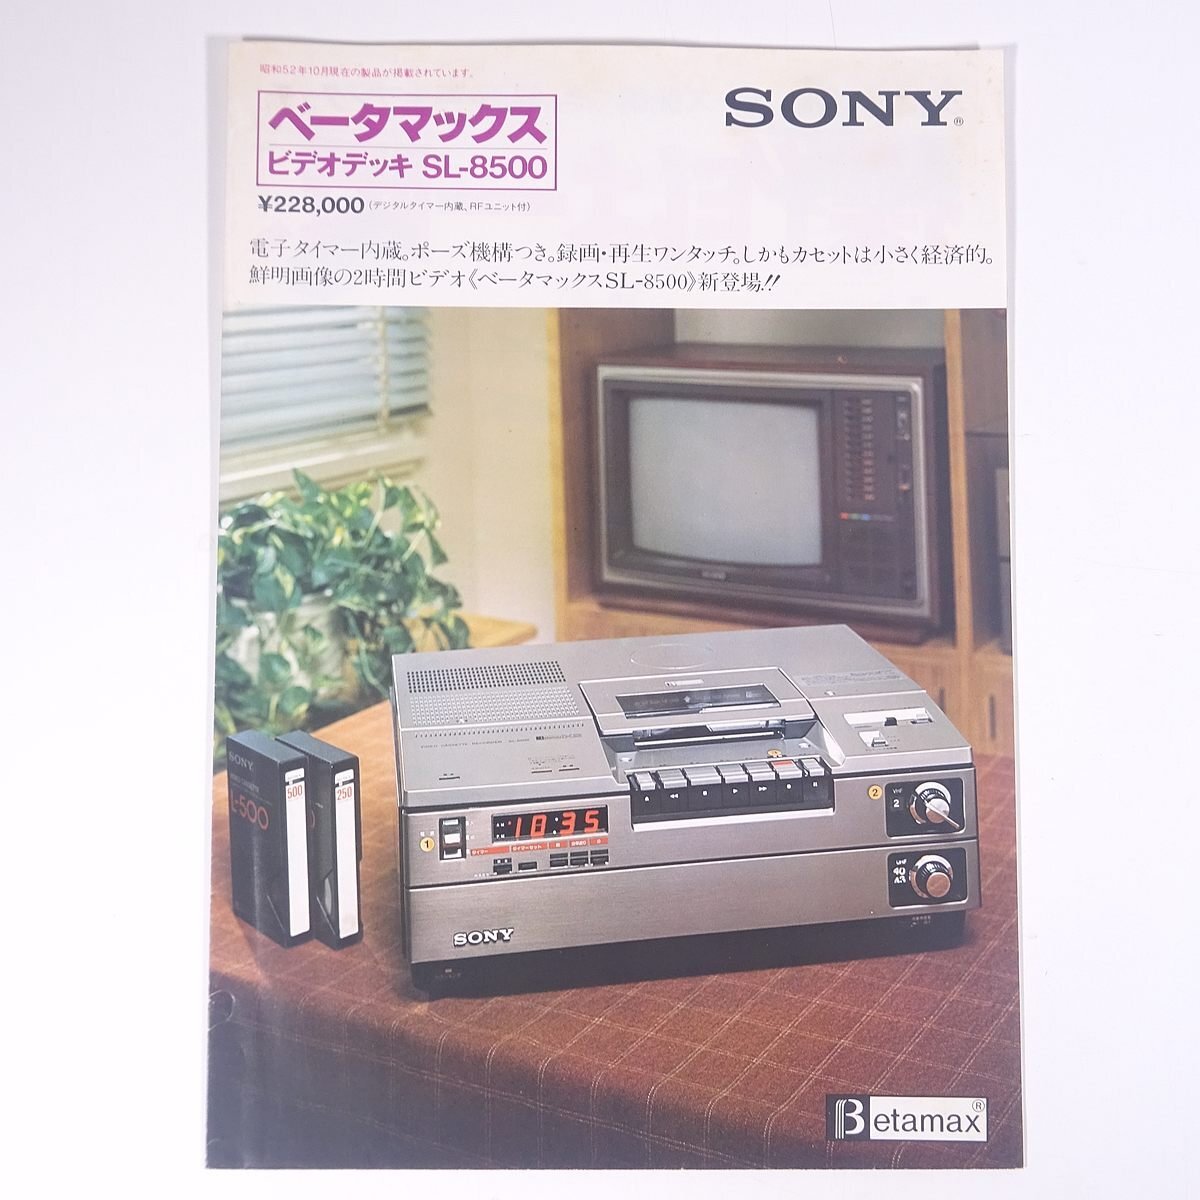 SONY ソニー ベータマックス SL-8500 1977 小冊子 カタログ パンフレット ビデオデッキ_画像1